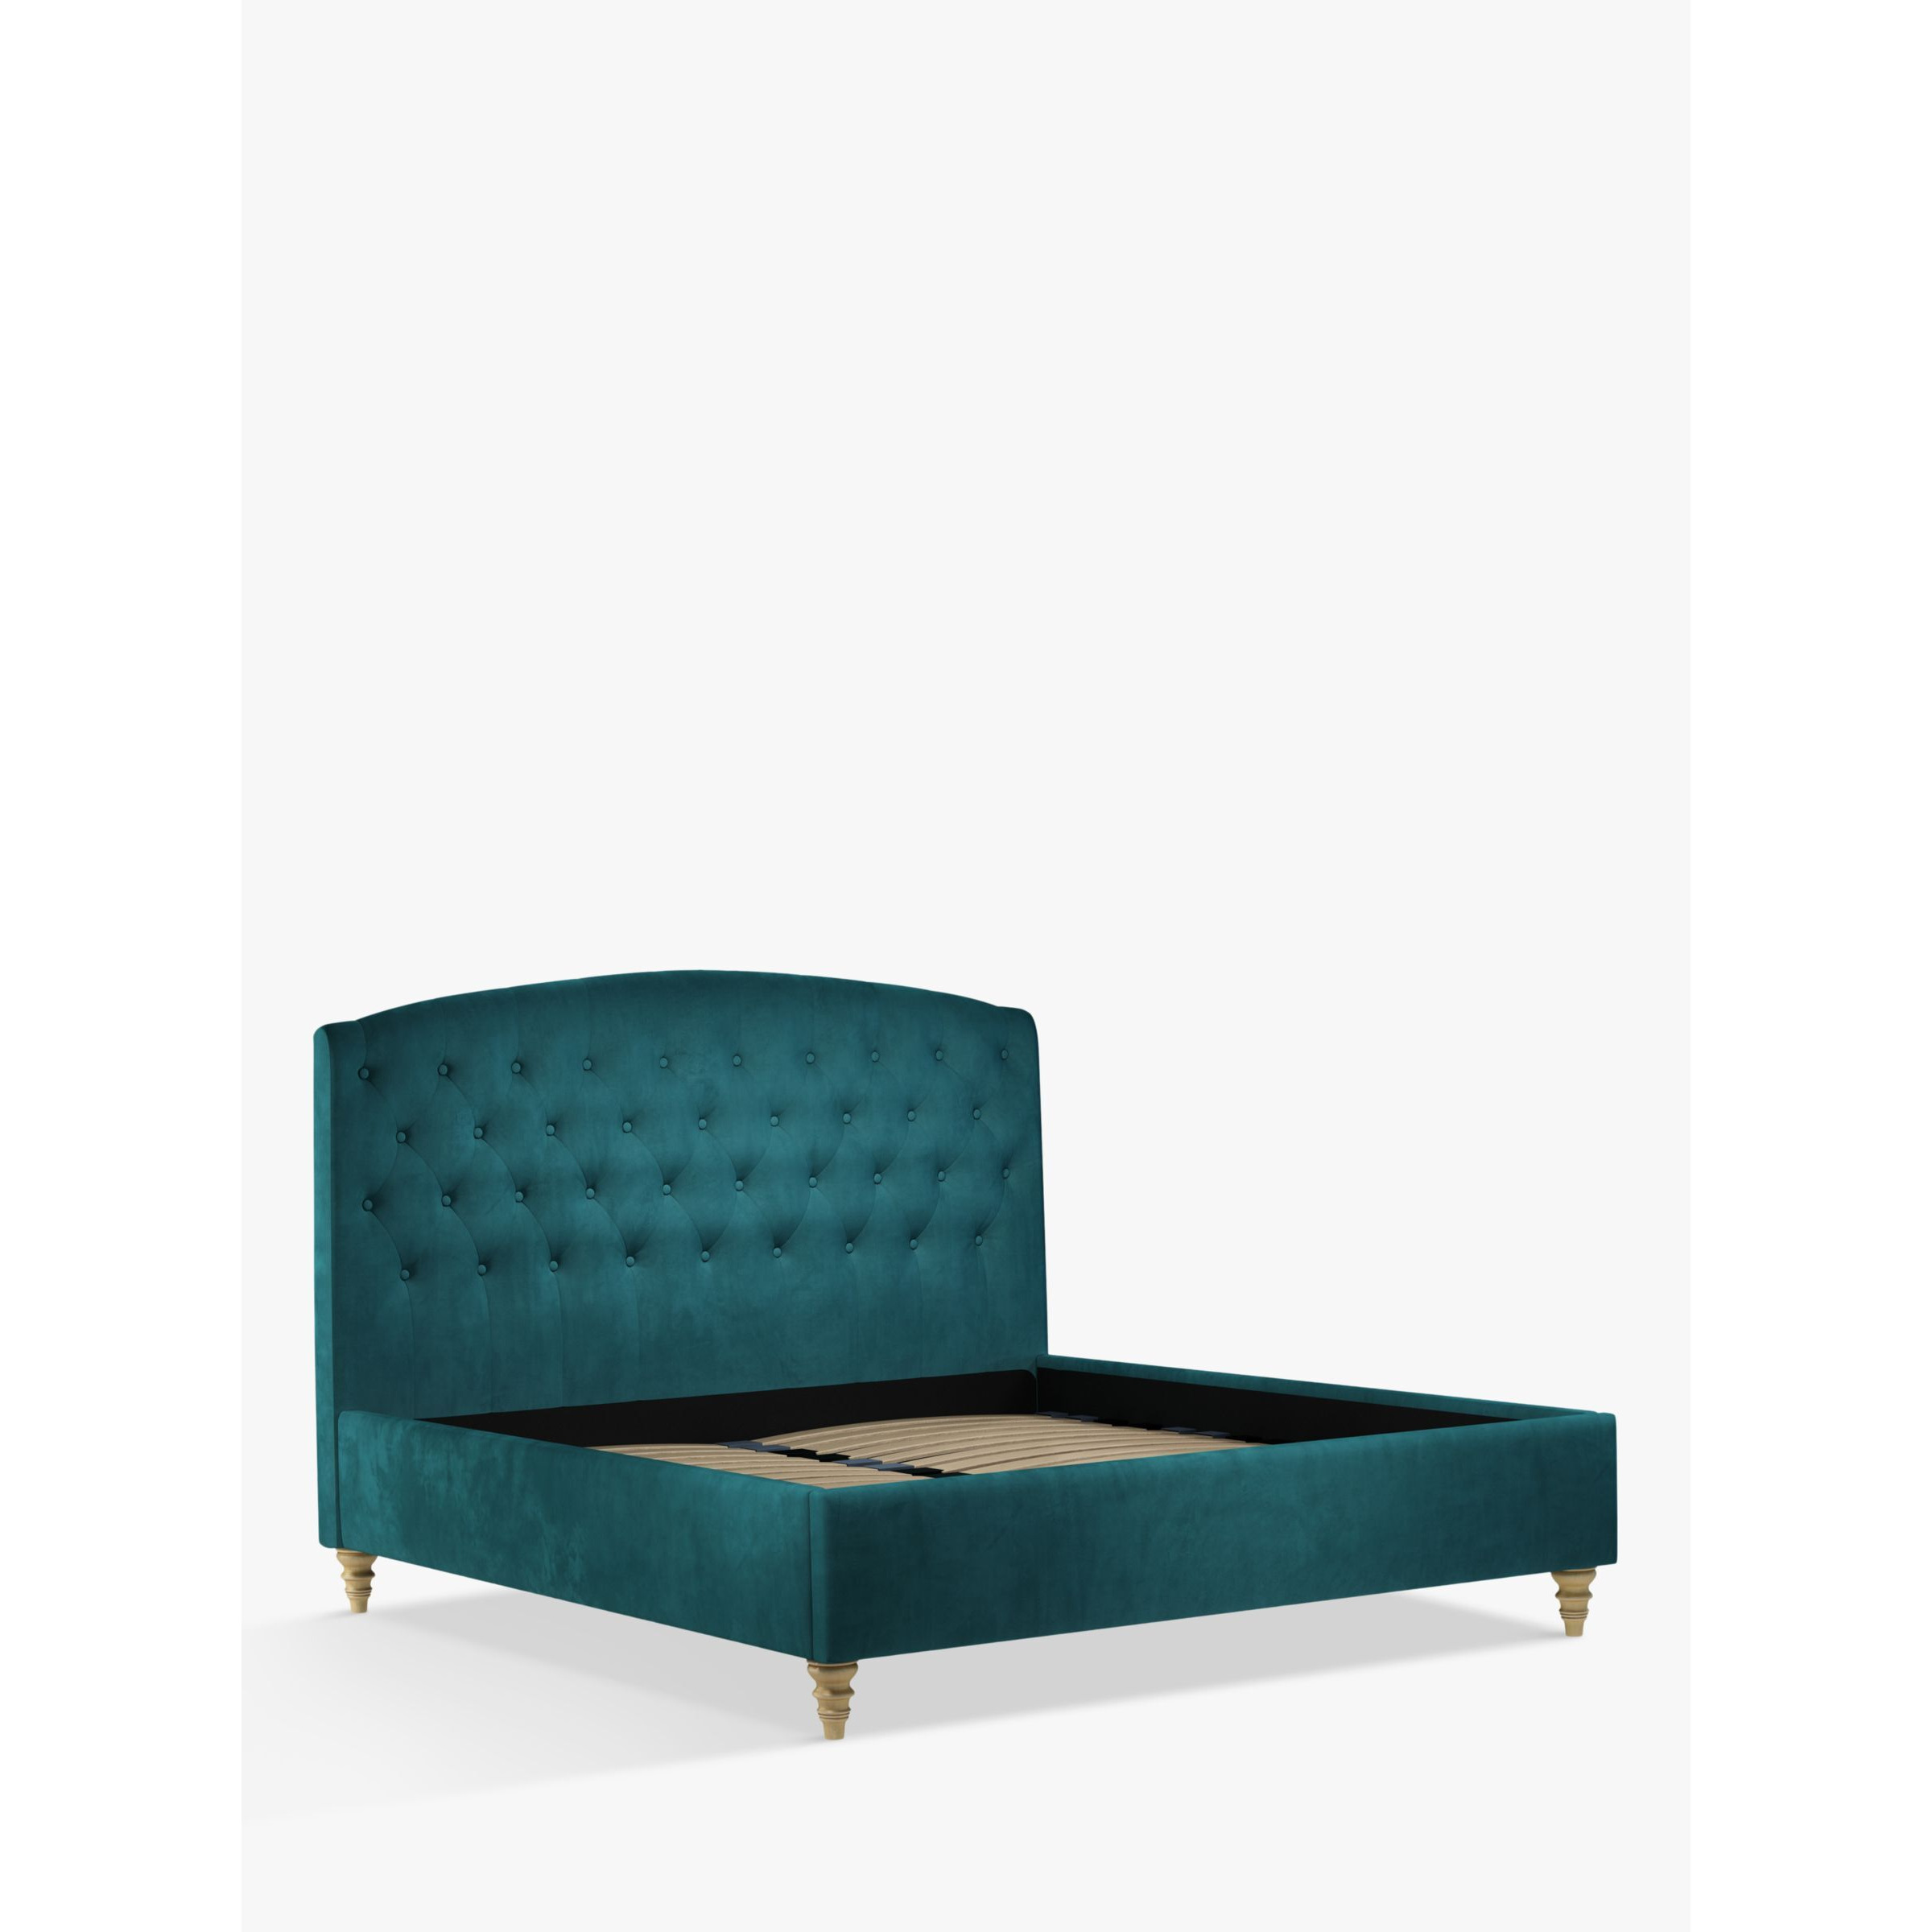 John Lewis Rouen Upholstered Bed Frame, Super King Size - image 1